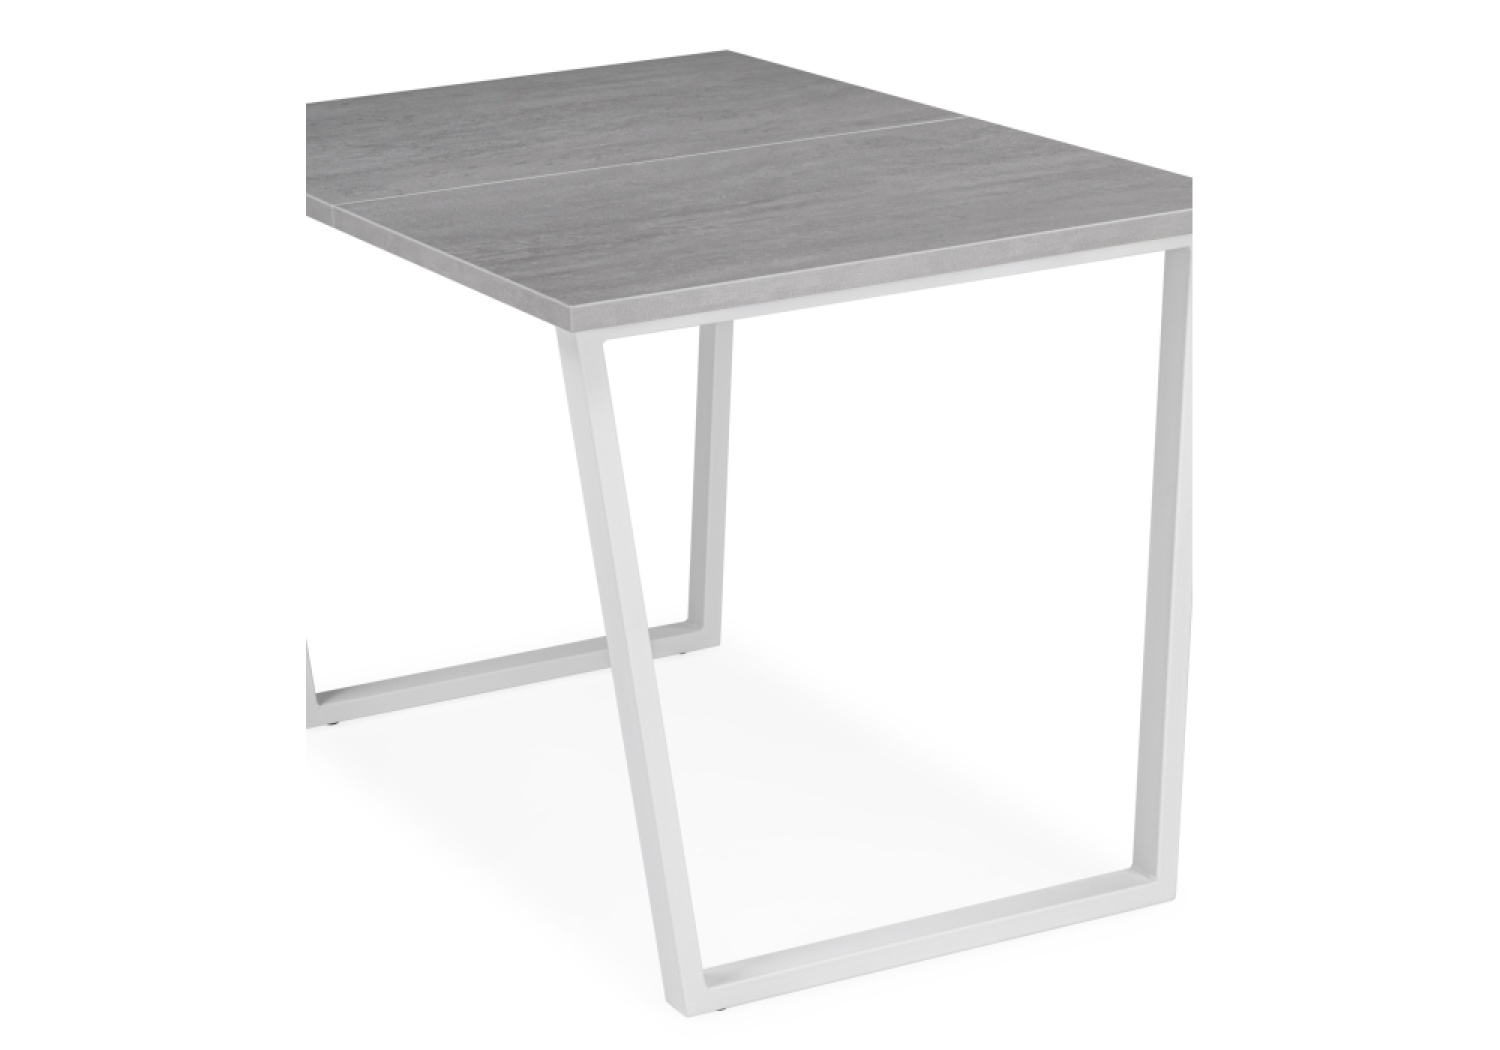 Деревянный стол Лота Лофт 120 25 мм бетон / белый матовый